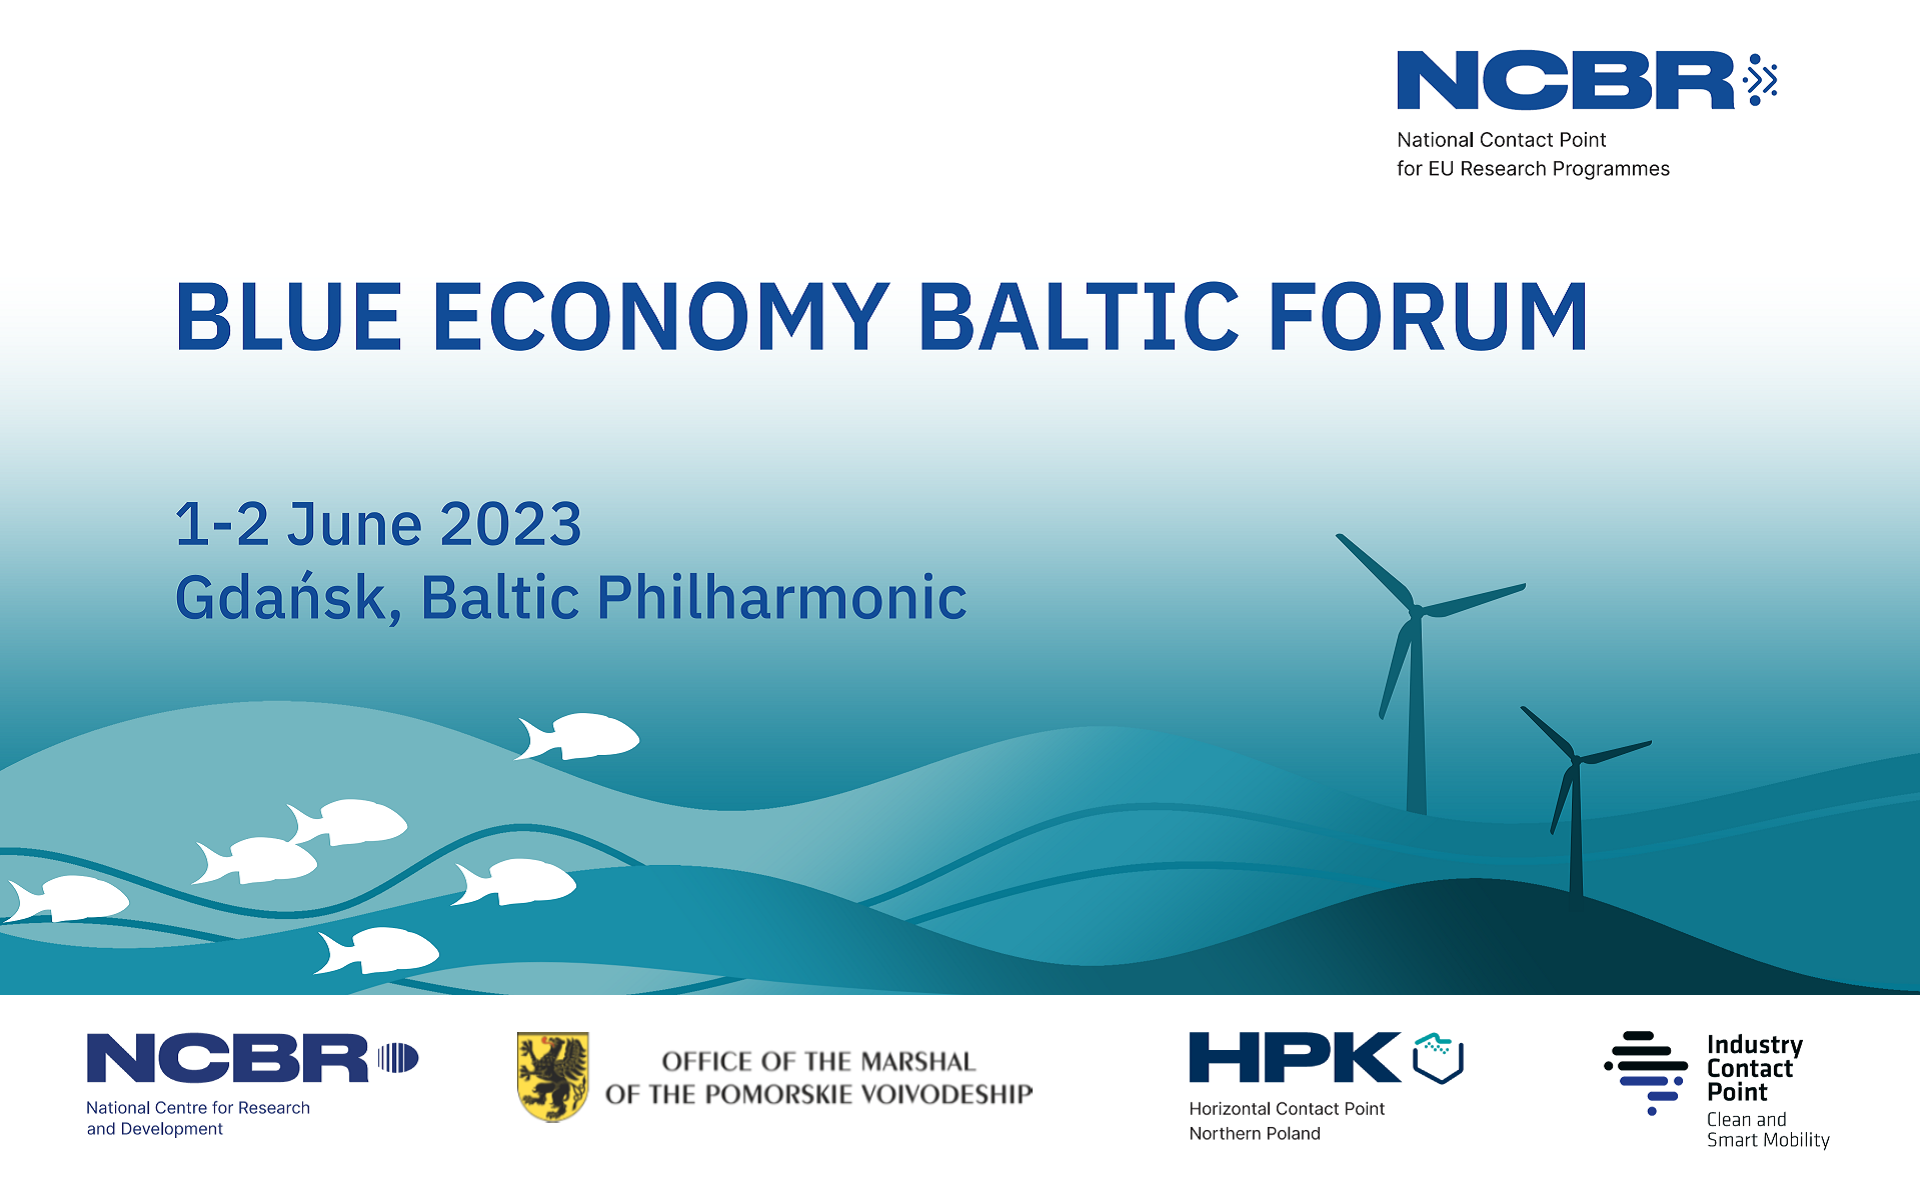 Blue Economy Baltic Forum 2023, materiały organizatorów. 